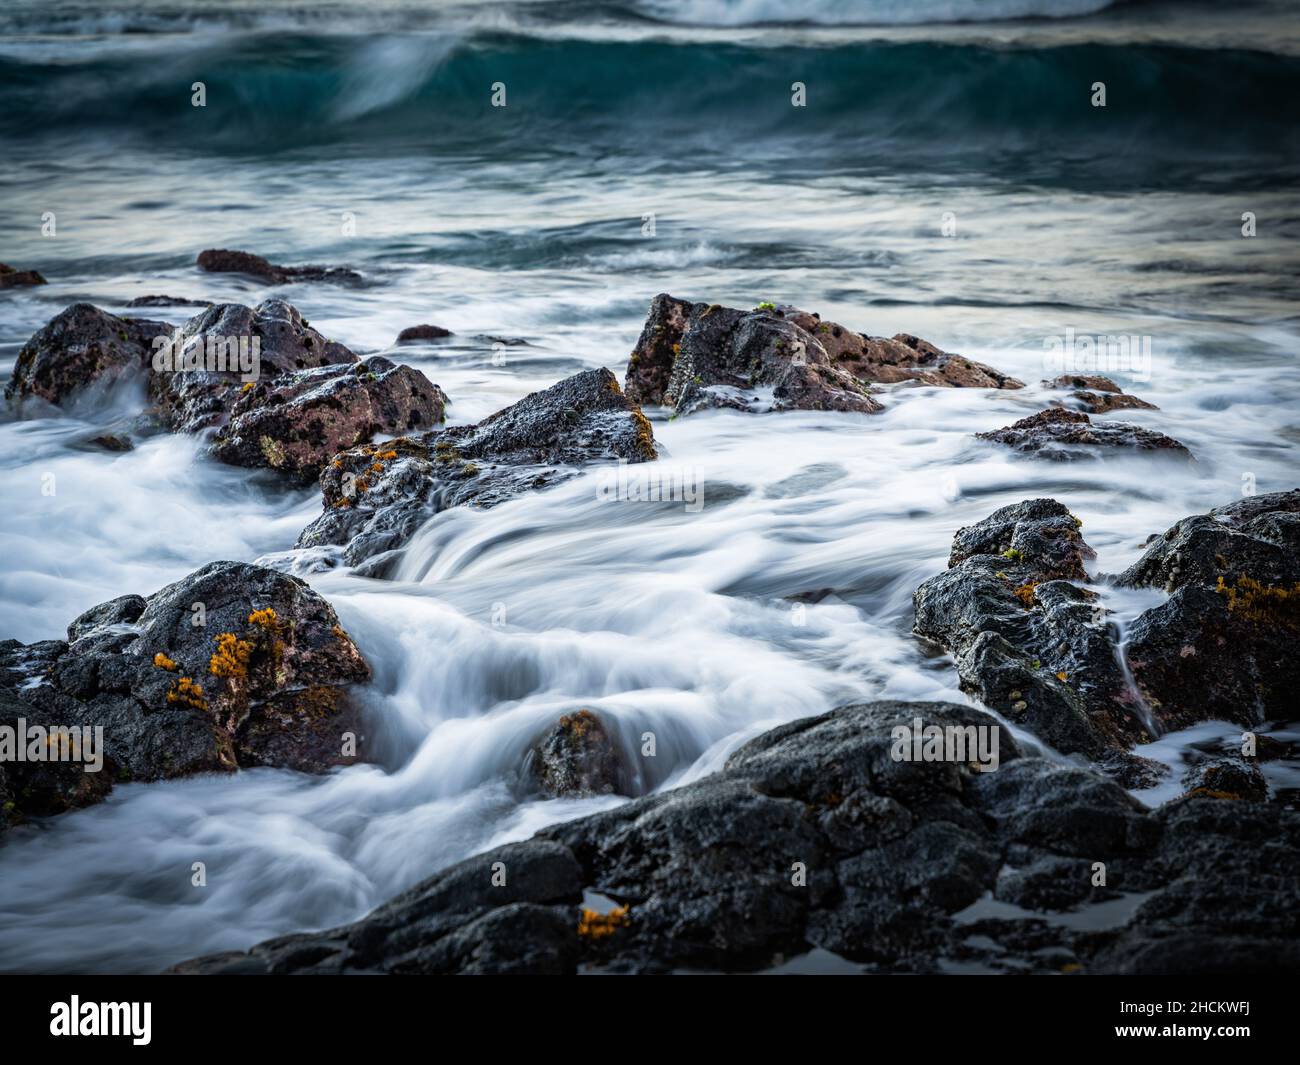 Vista mozzafiato dell'acqua schiumosa che scorre su una spiaggia rocciosa Foto Stock